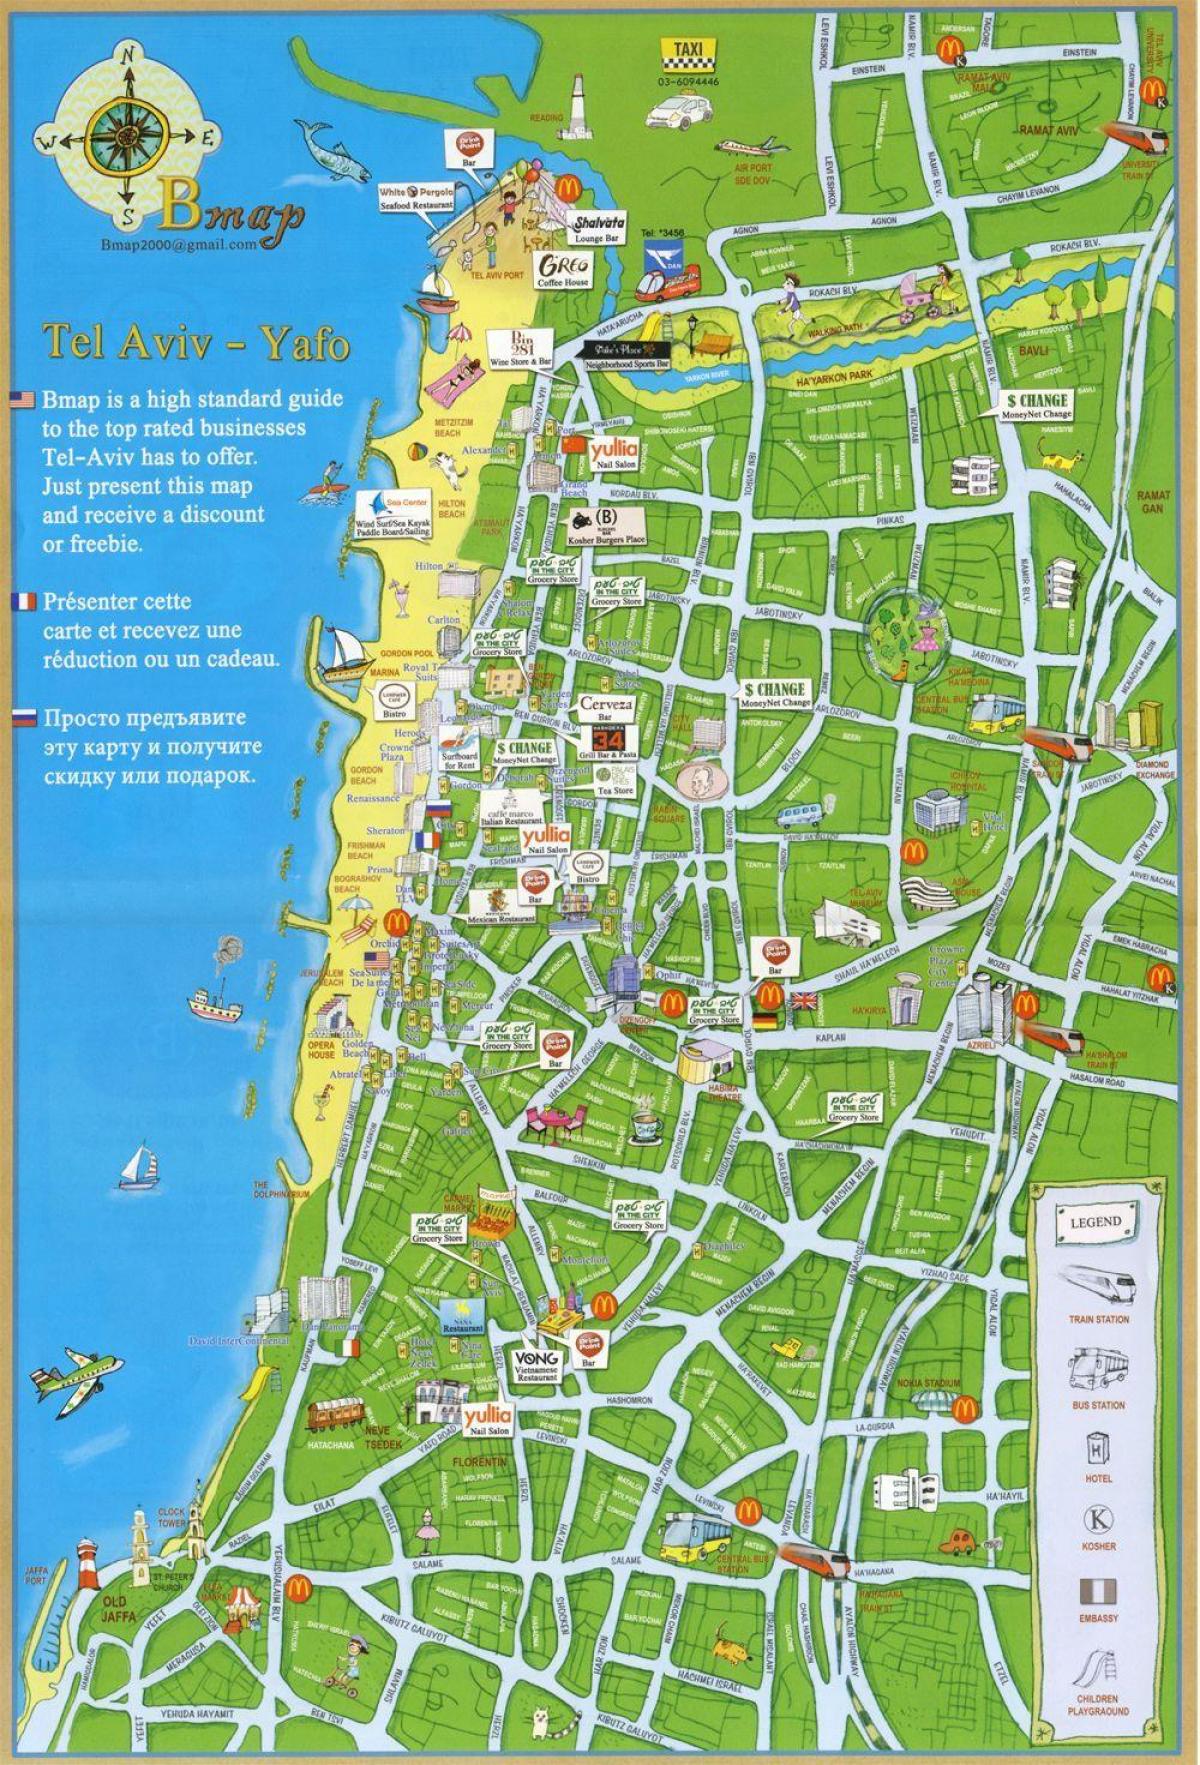 Tel Aviv газрууд газрын зураг